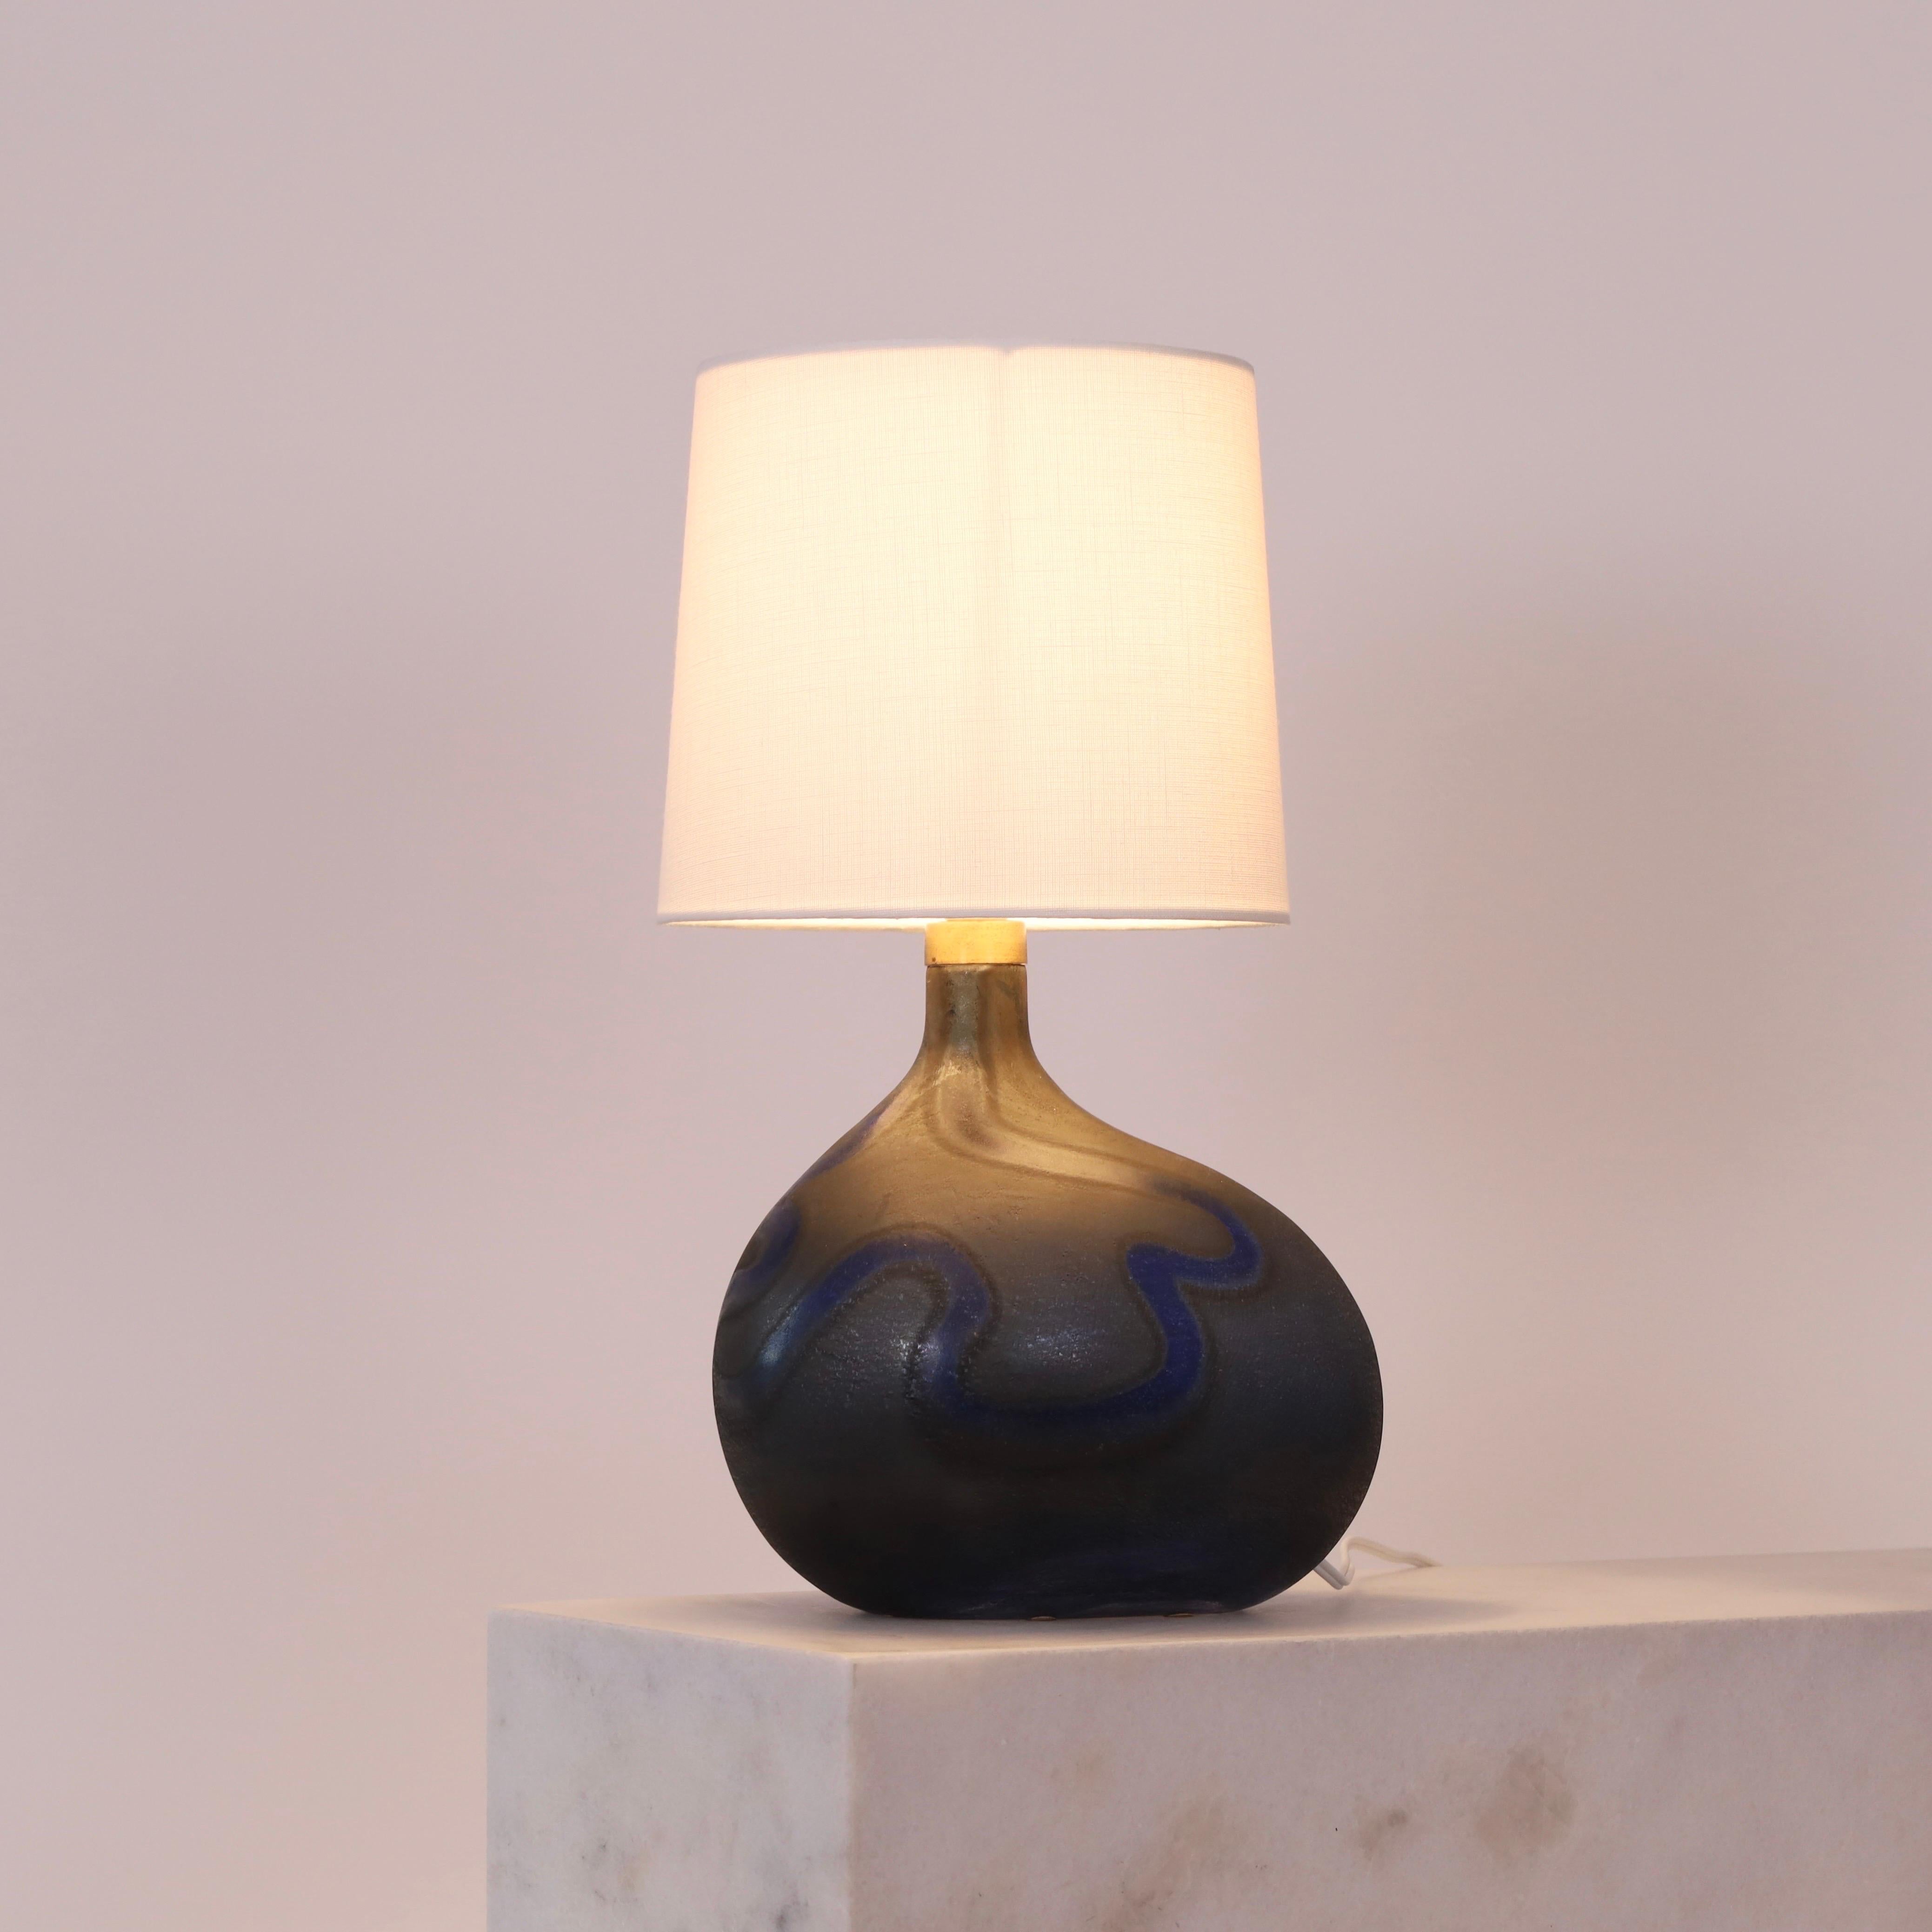 Lampe de bureau en verre de forme organique conçue par Michael Bang en 1972 pour Holmegaard, Danemark. Irrésistible à l'œil.

* Lampe de table en verre organique à motifs bleus avec un abat-jour en tissu blanc.
* Designer : Michael Bang 
* Style :